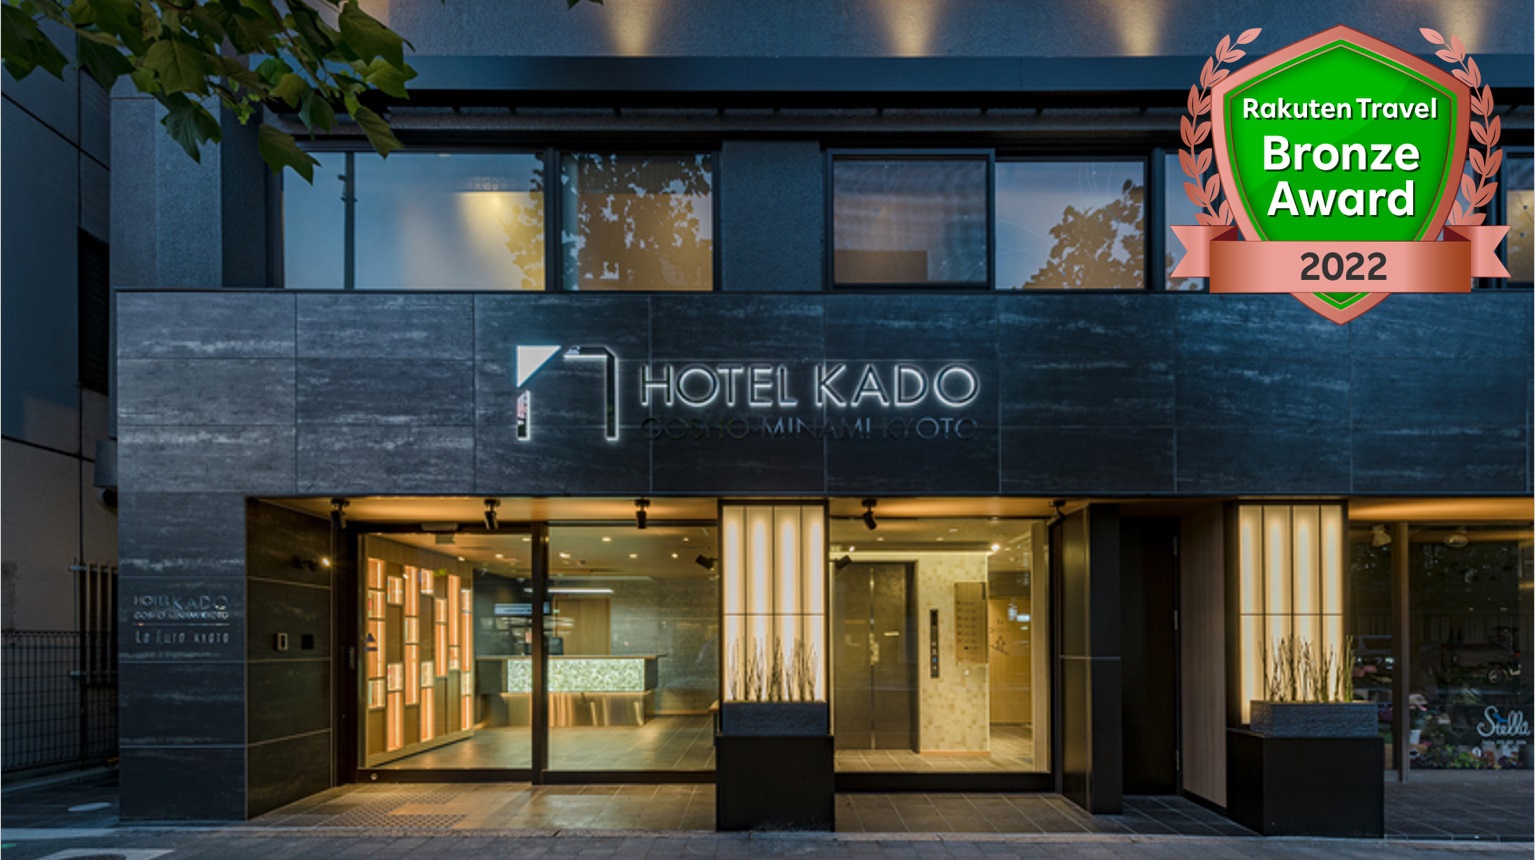 HOTEL KADO GOSHO-MINAMI KYOTO image